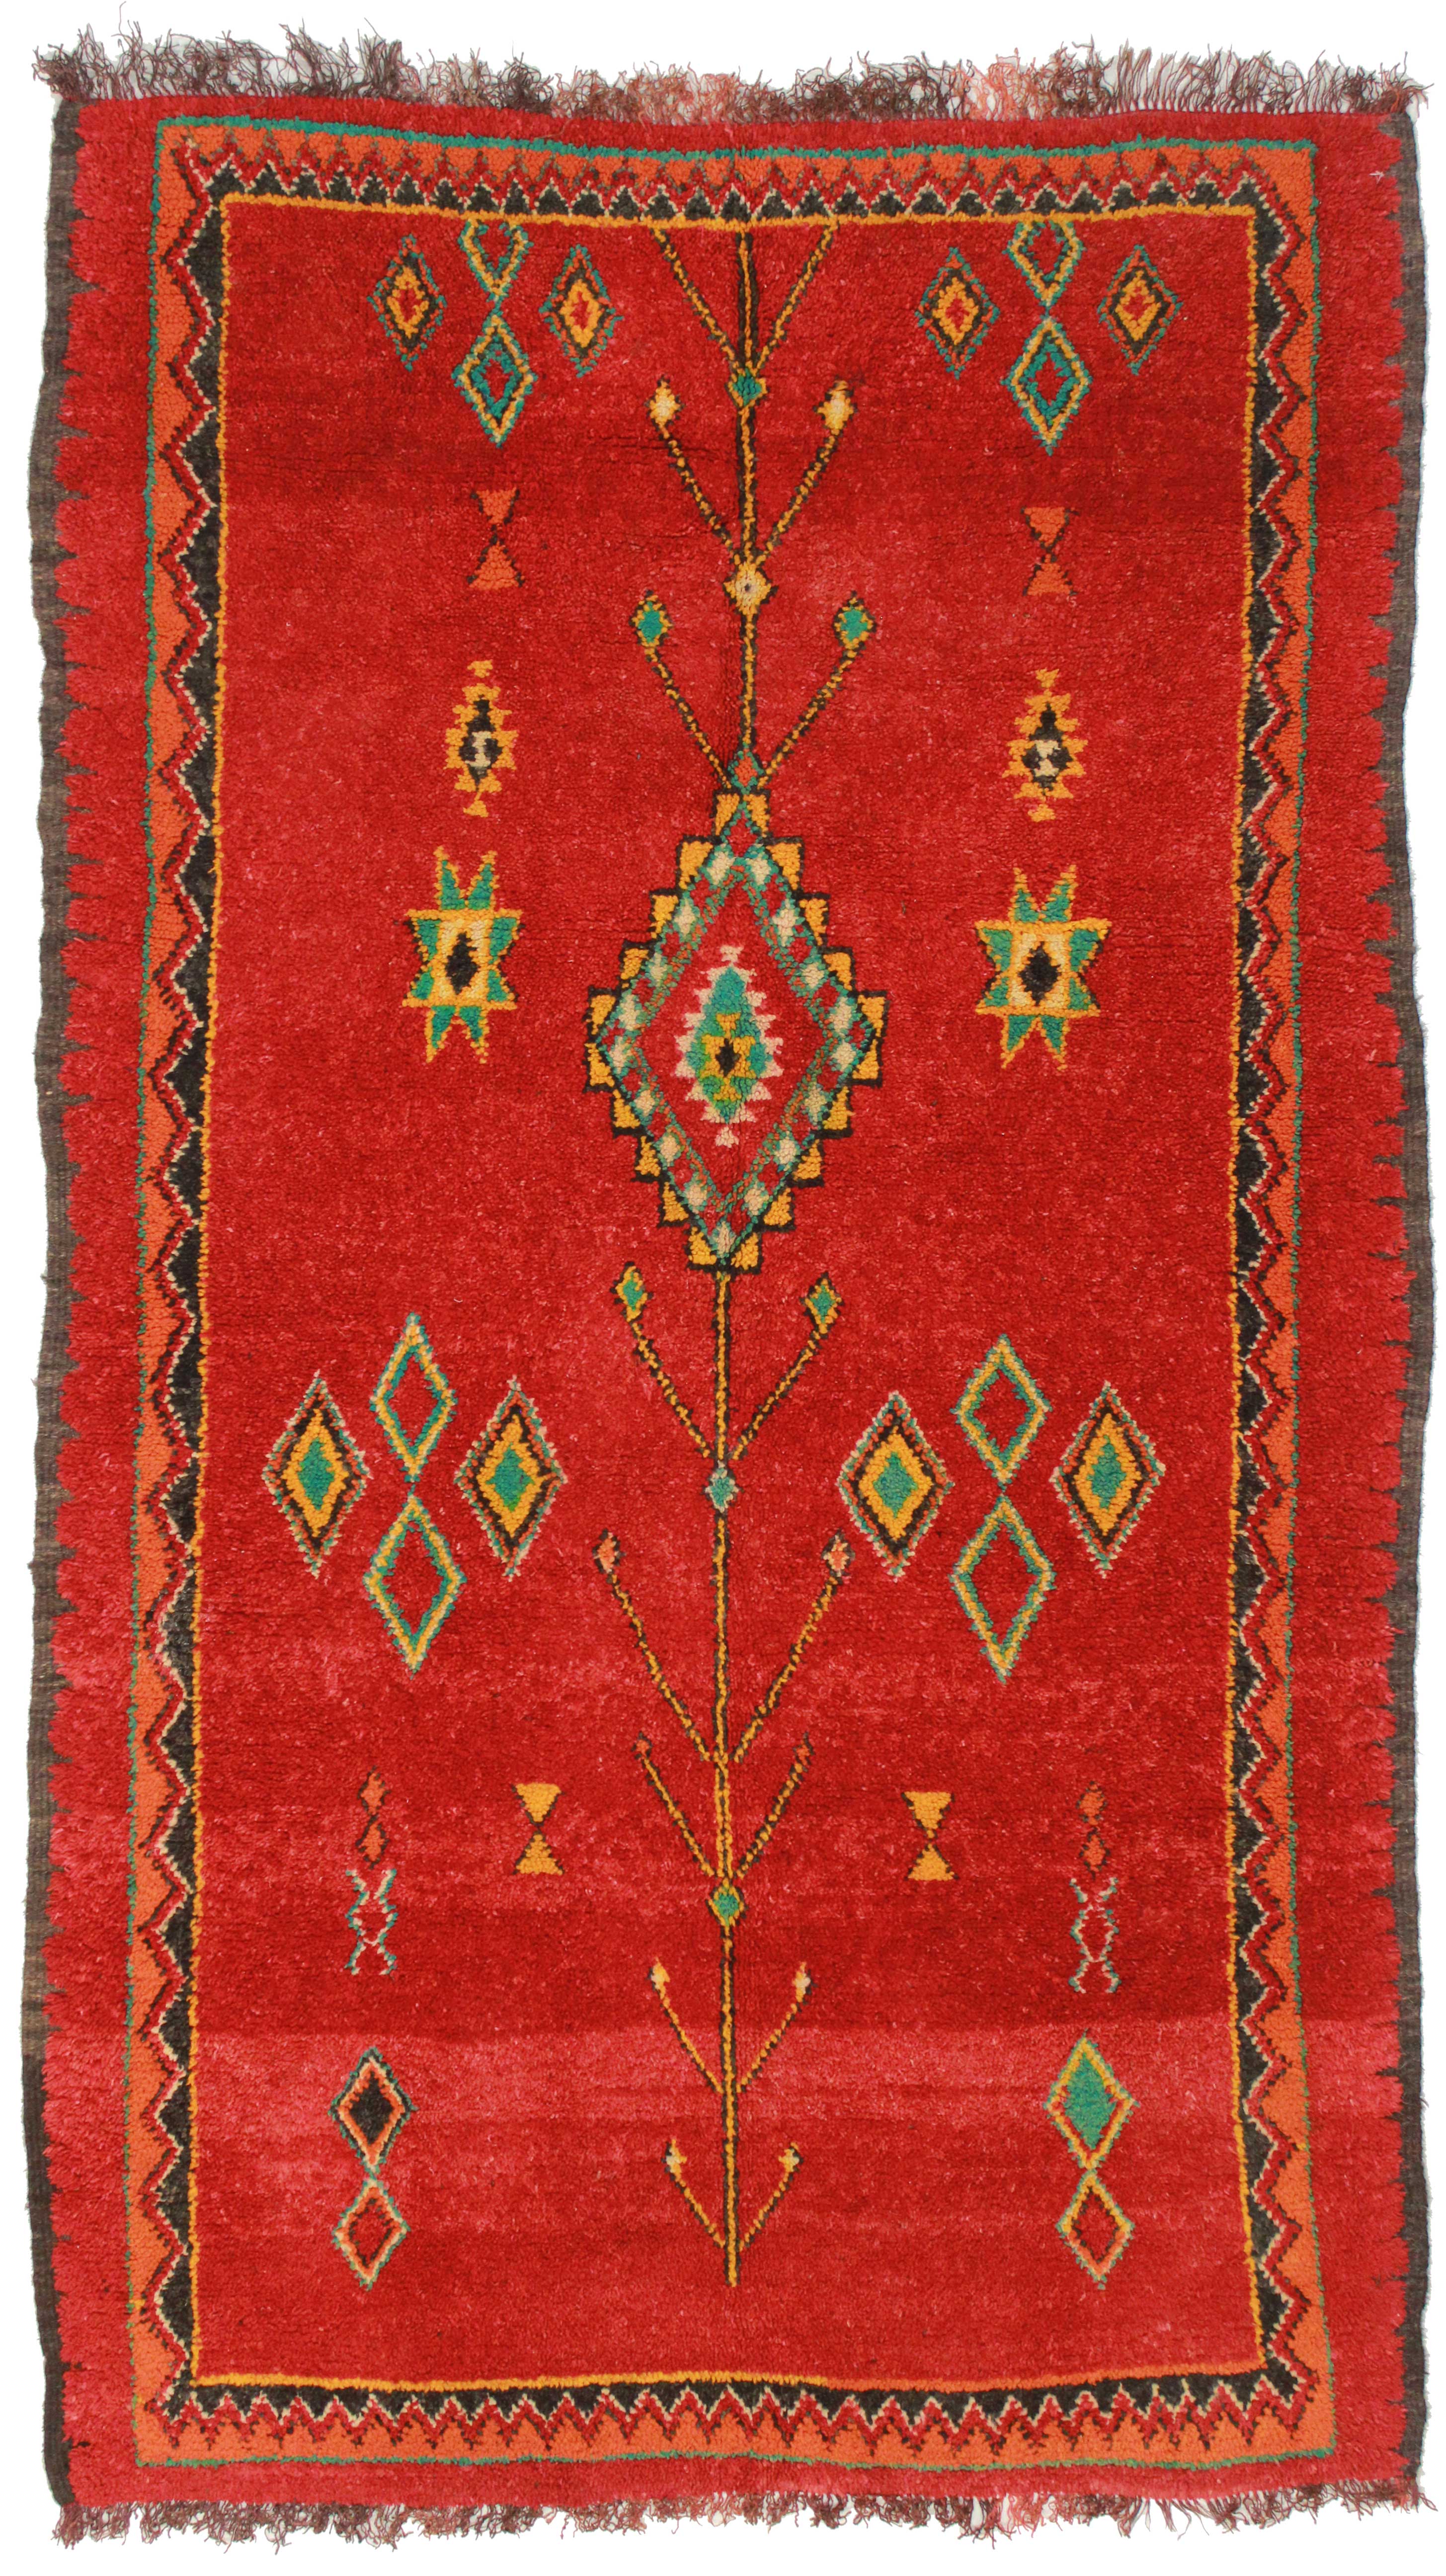 5 x 8 Vintage Moroccan Wool Rug 14336 | Exclusive Oriental Rugs